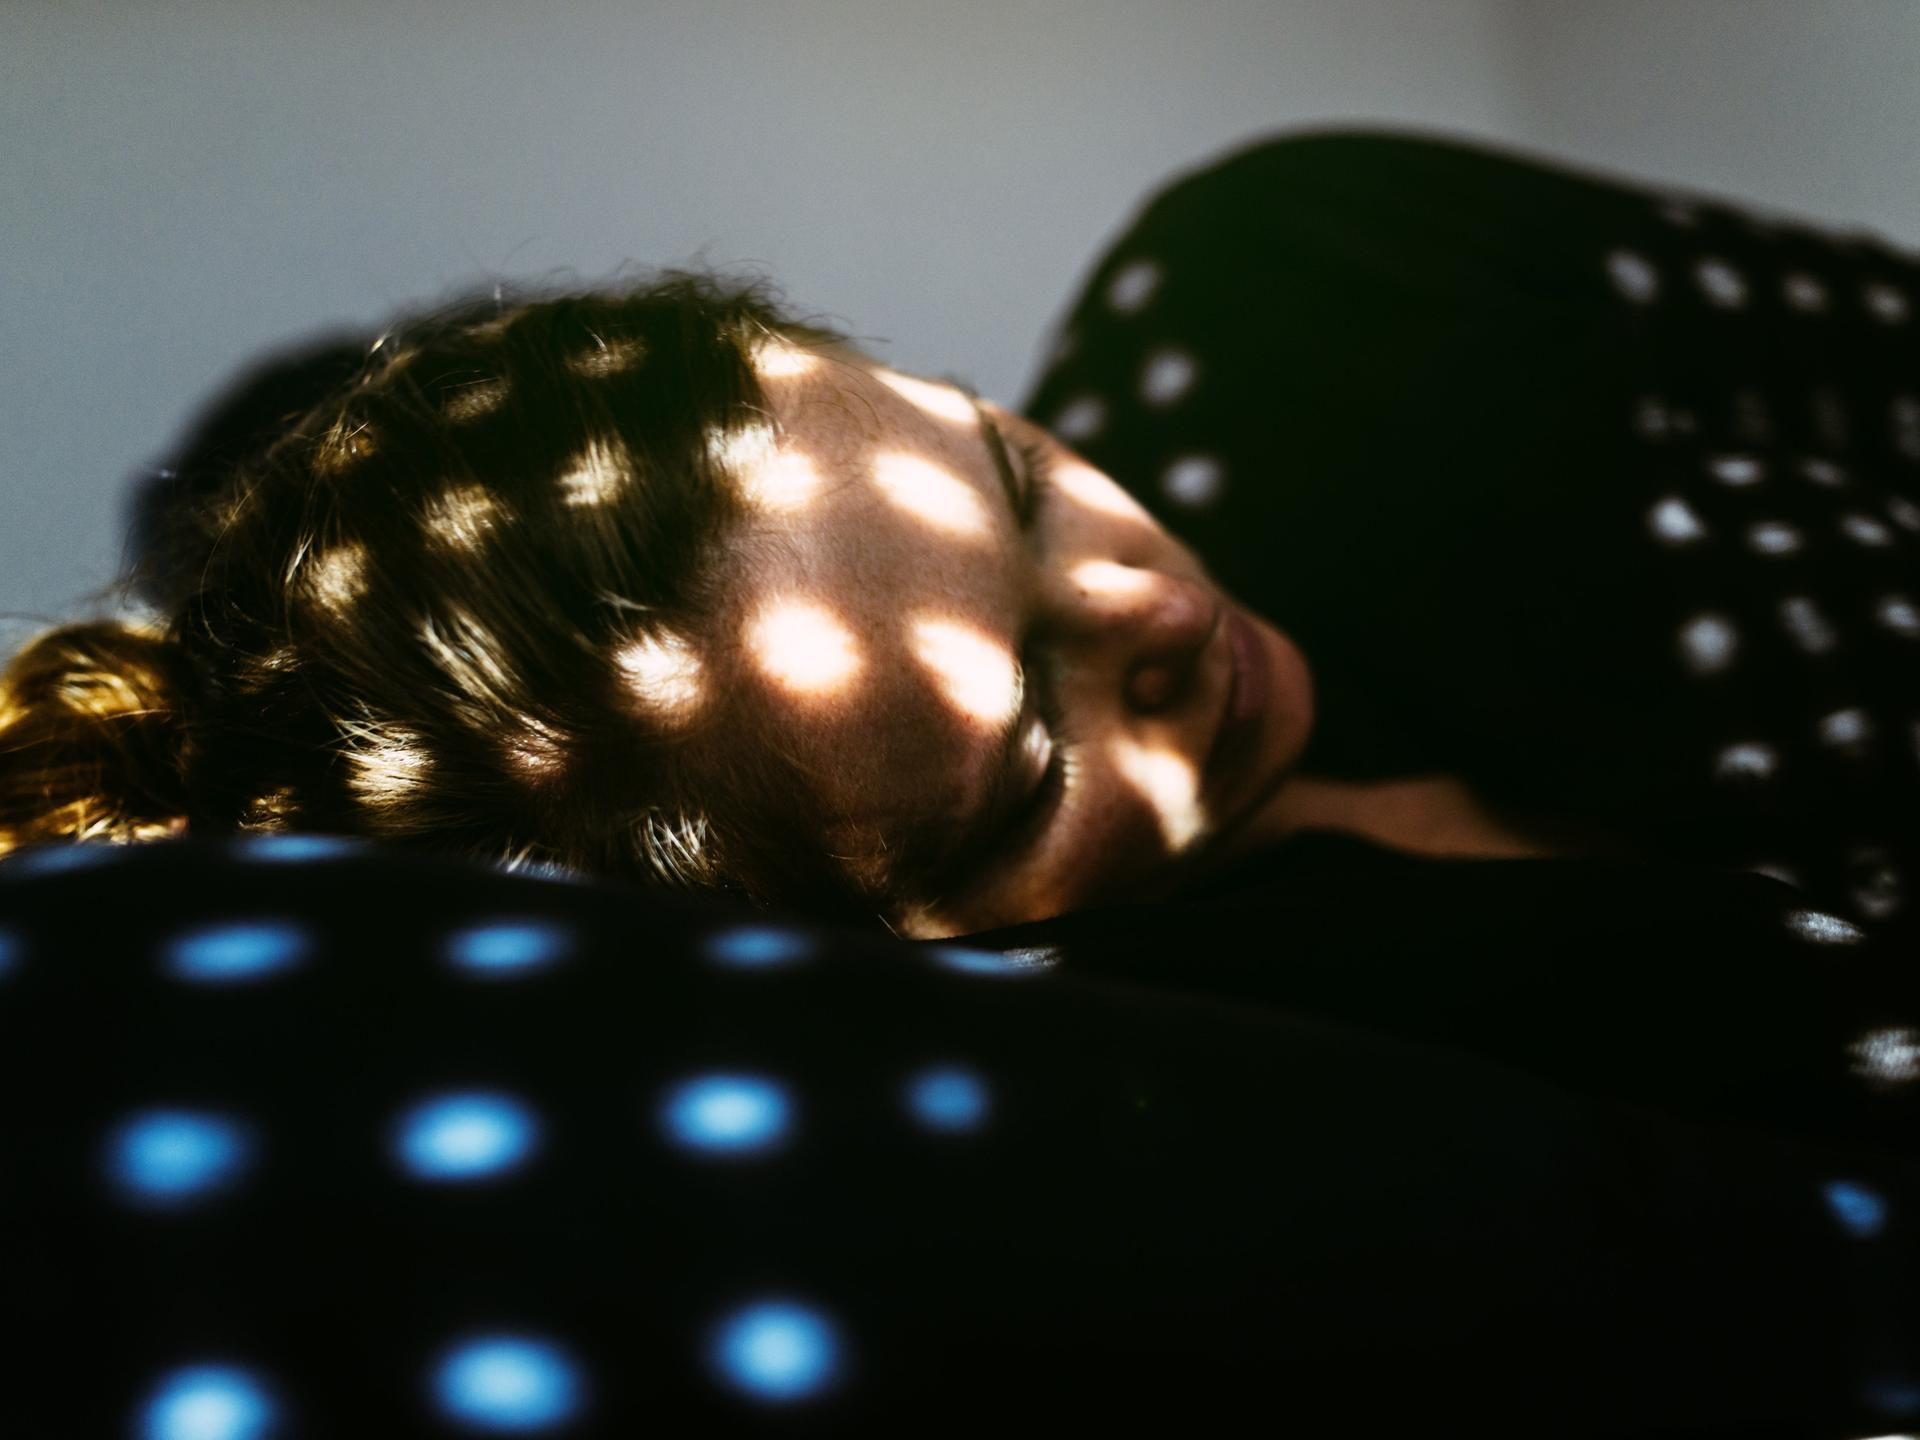 Eine Frau liegt im Dunkeln auf einem Kopfkissen, in ihrem Gesicht sind Lichtpunkte zu sehen, die offensichtlich durch eine Jalousie scheinen